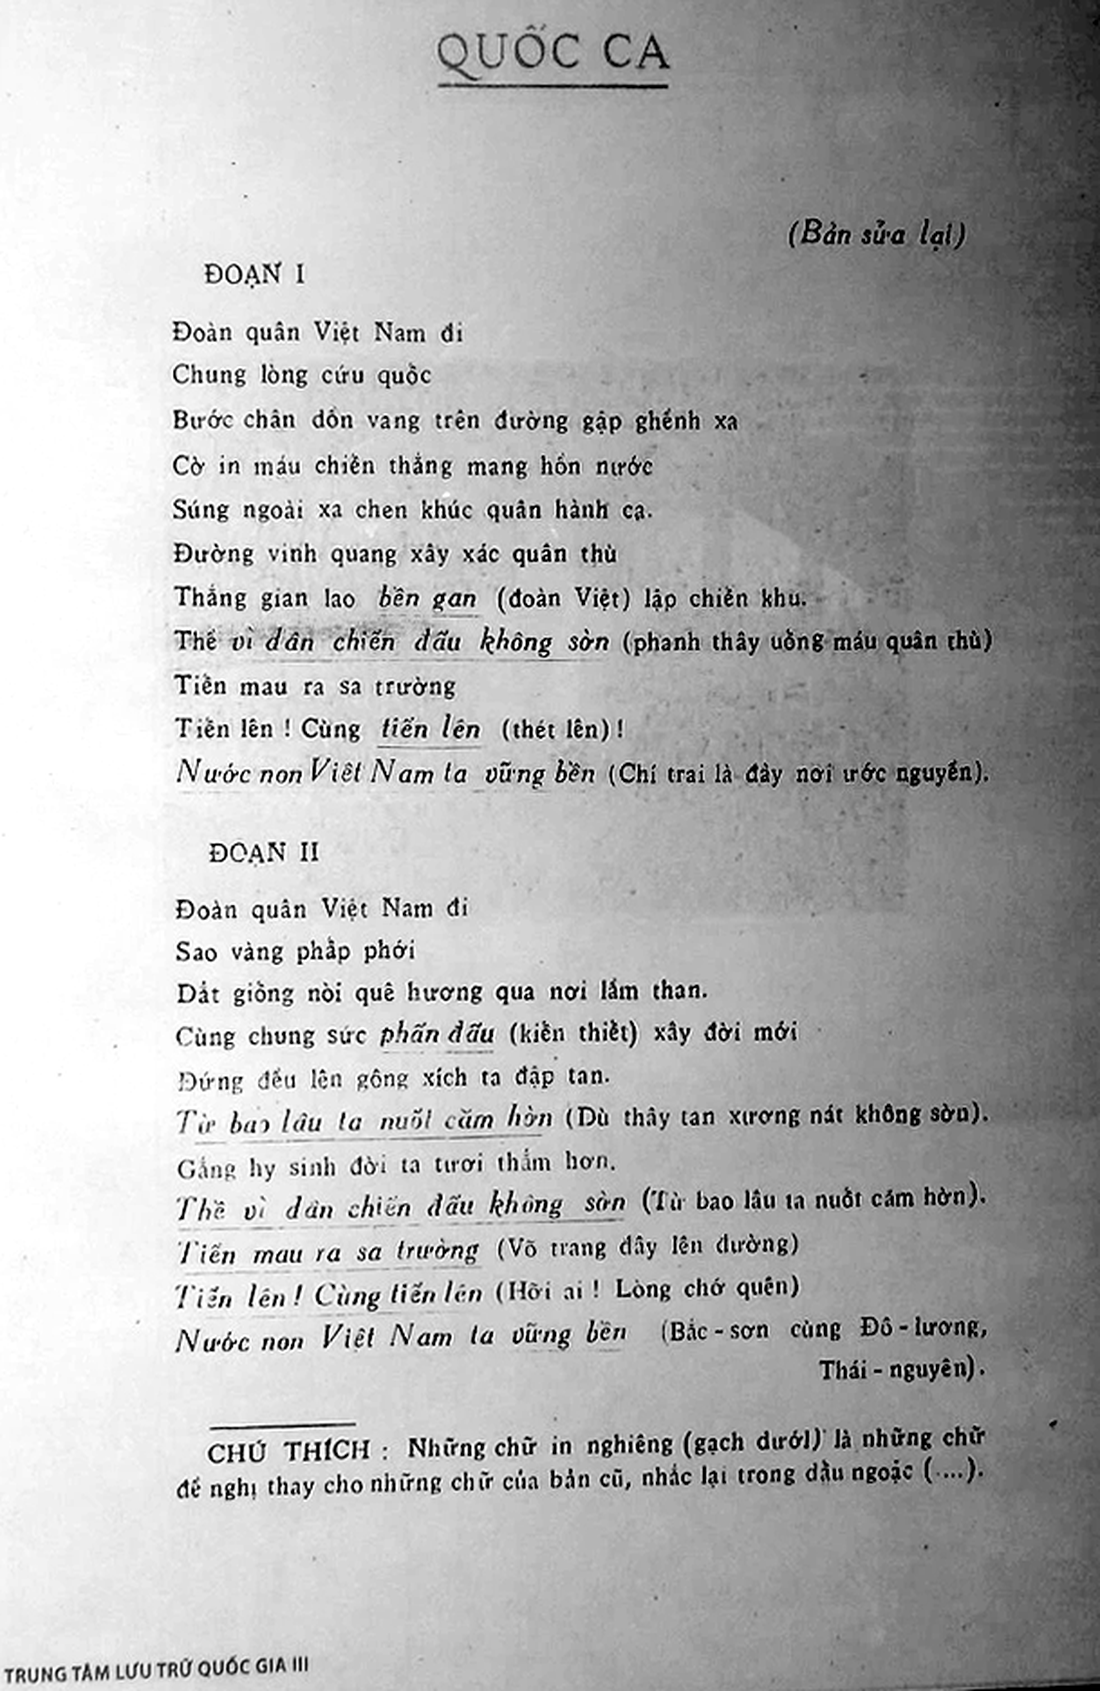 Lời bài hát quốc ca được Quốc hội thông qua năm 1955 - Ảnh: T.ĐIỂU chụp lại từ Trung tâm lưu trữ quốc gia